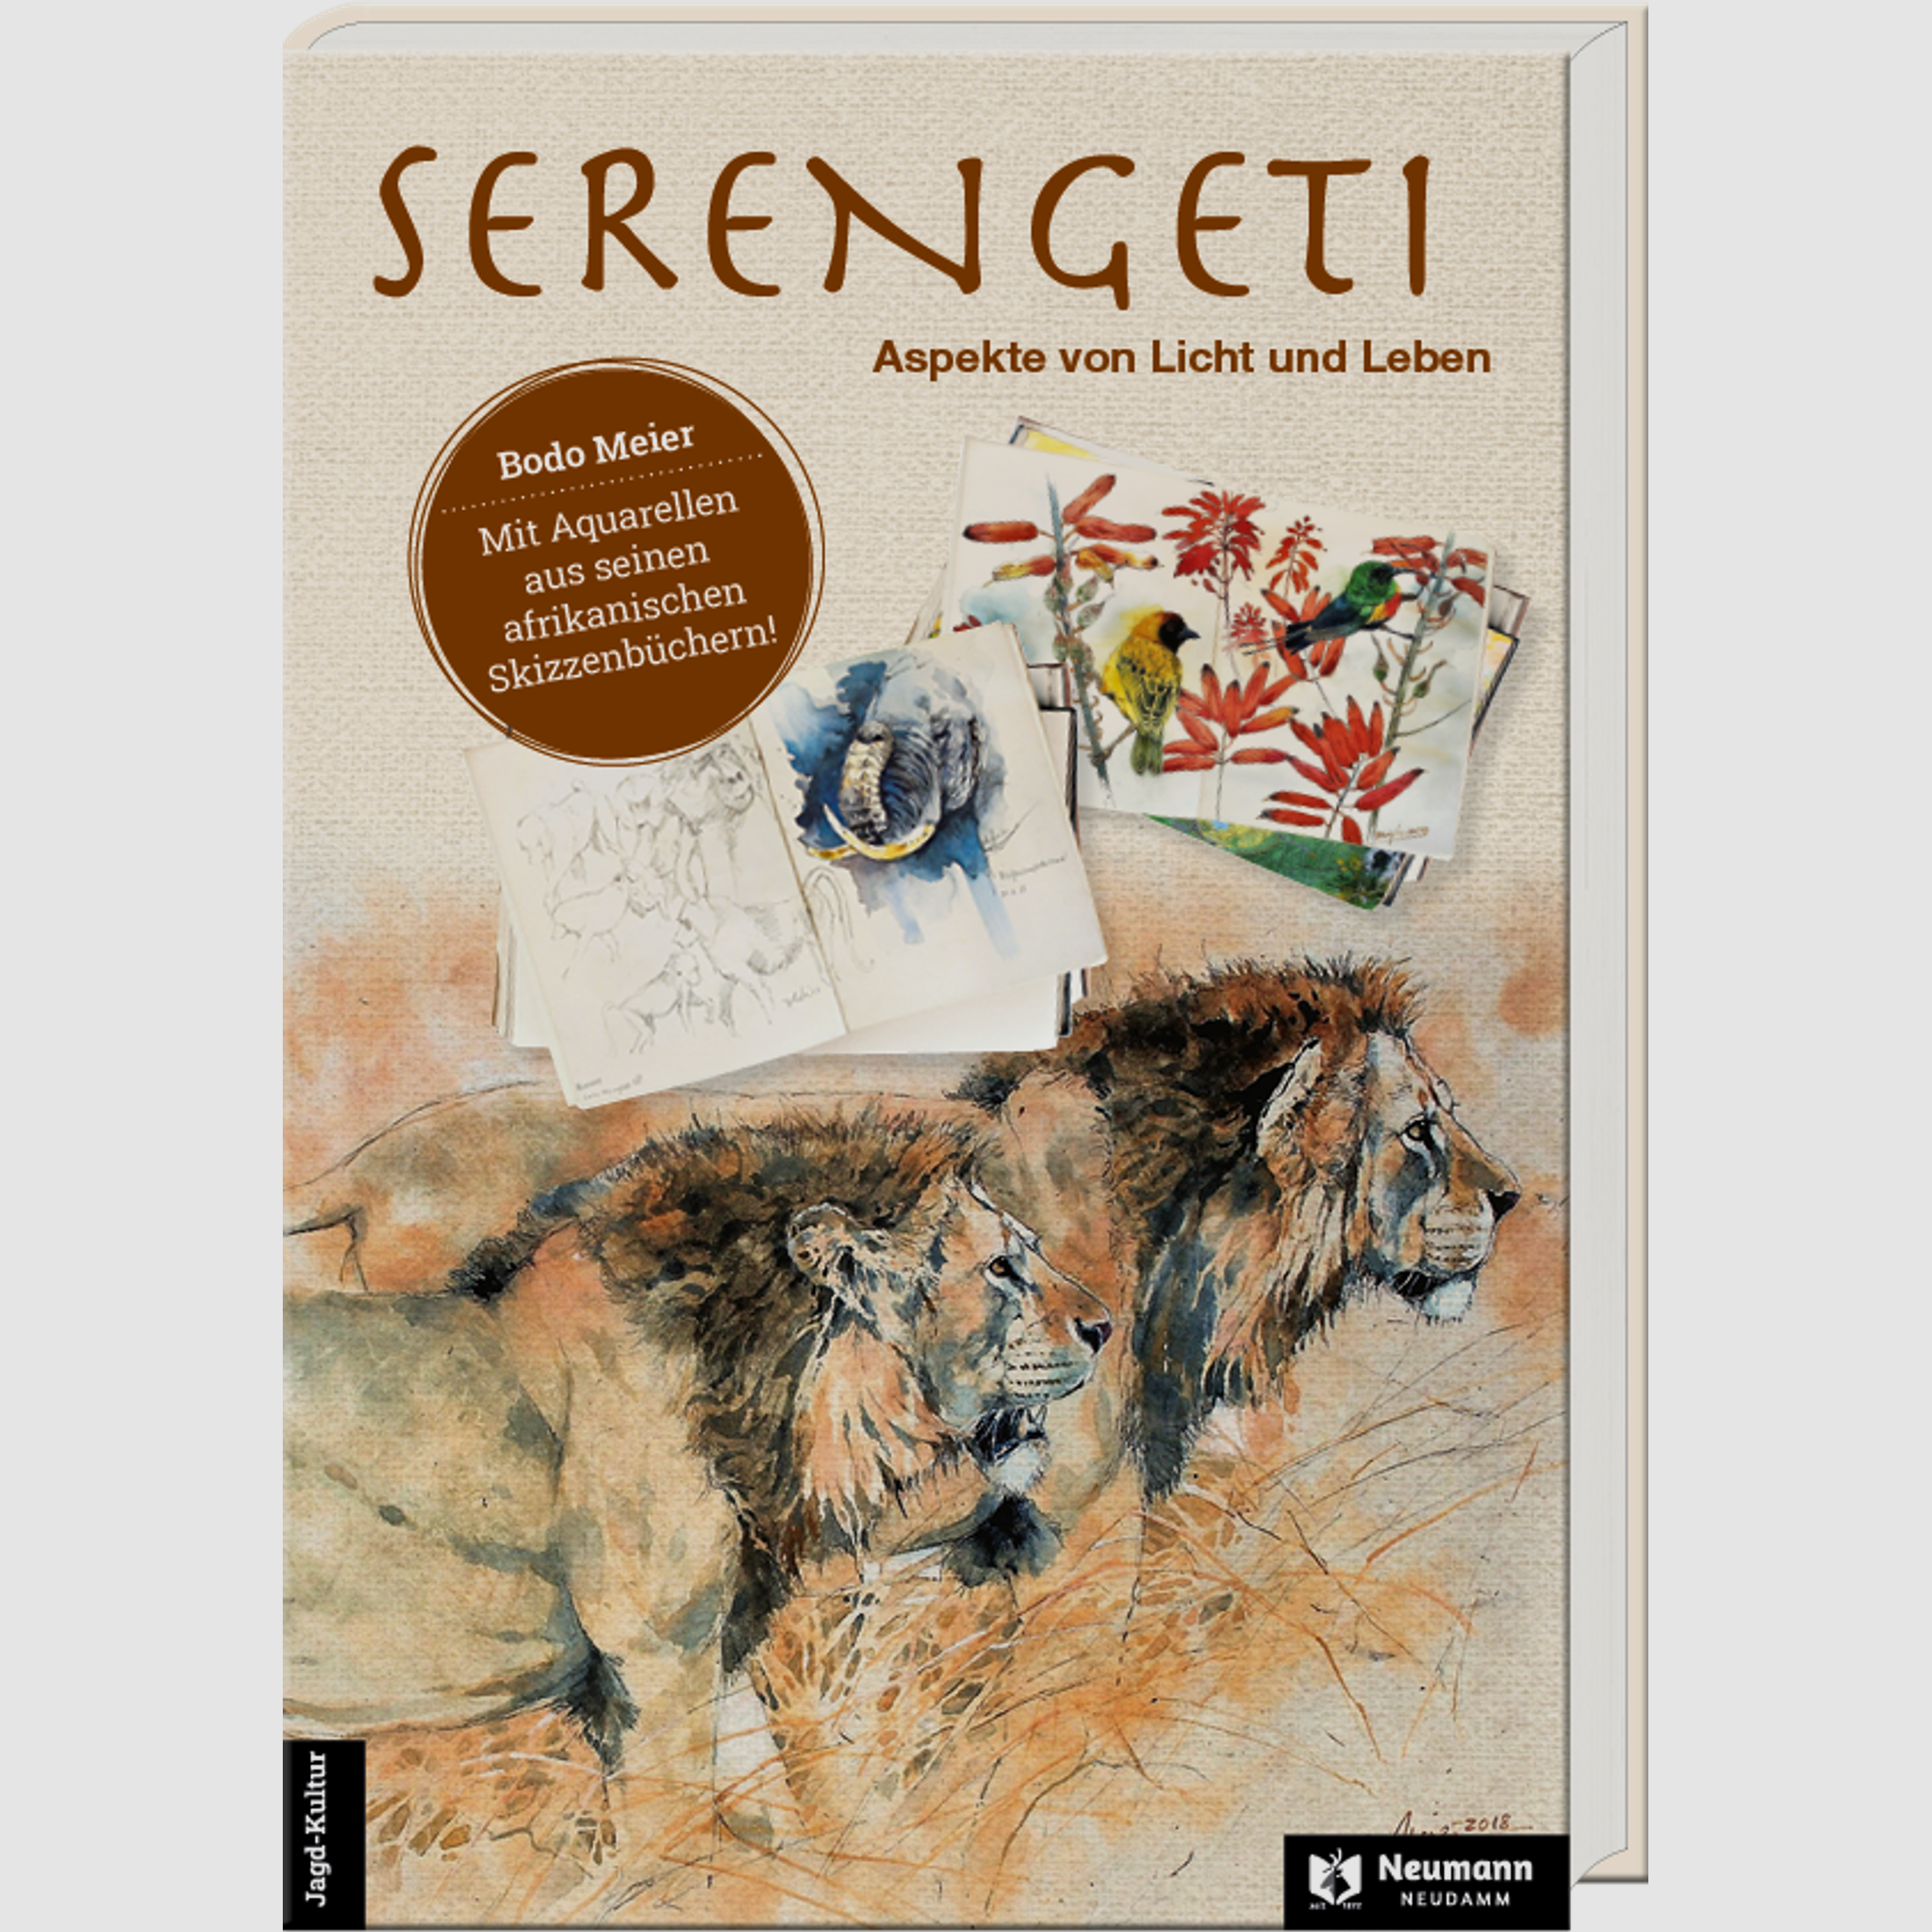 Serengeti: Aspekte von Licht und Leben - Bodo Meier